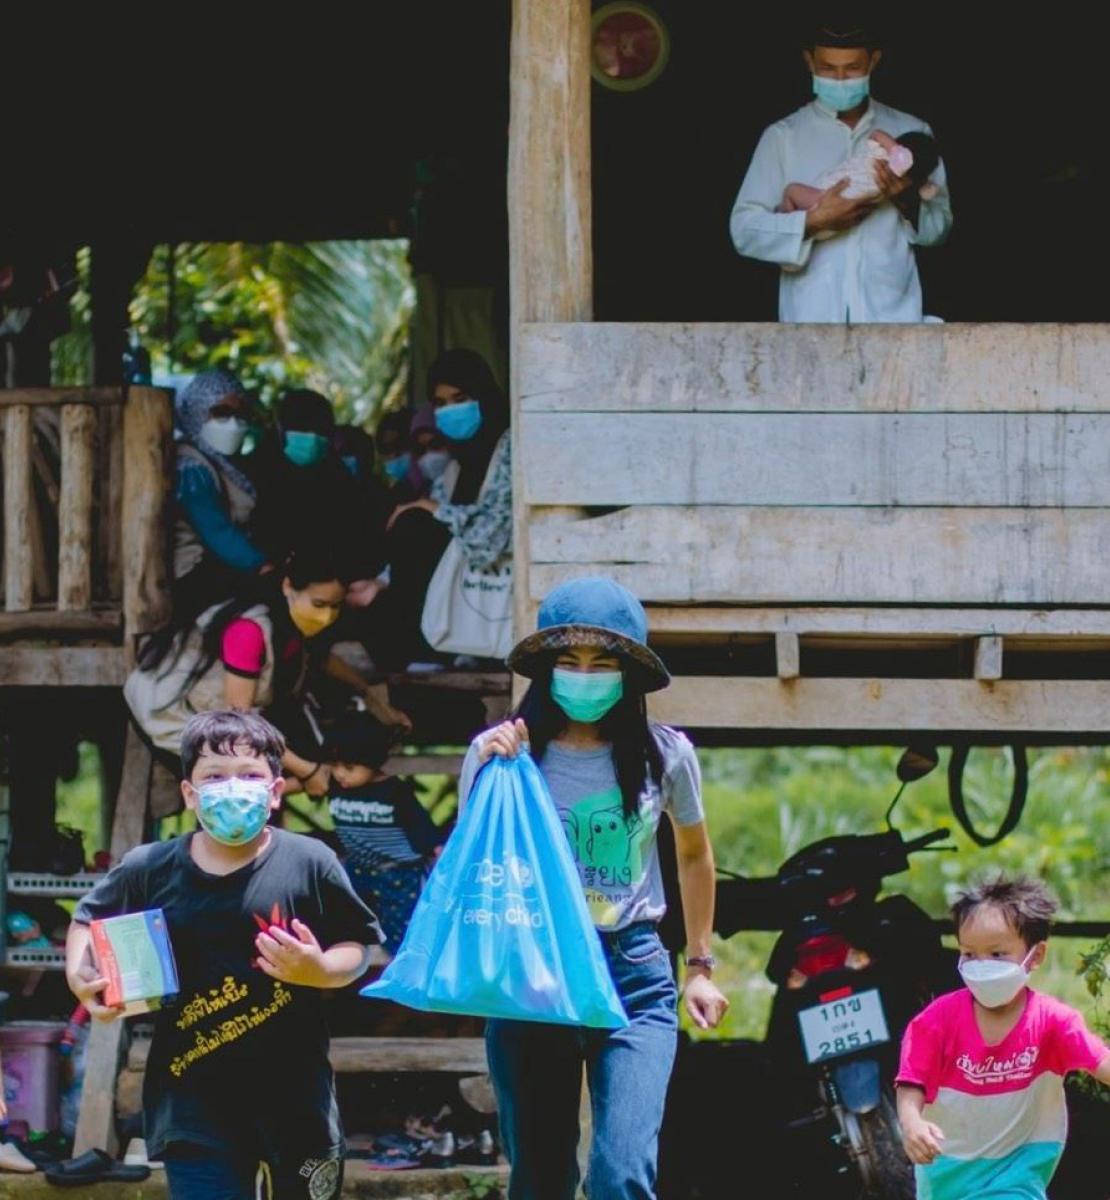 عائلات وأطفال يرتدون الكمامات خارج المنزل: خمسة أطفال يخرجون من المنزل متجهين نحو الكاميرا حاملين المساعدات التي قدمتها اليونيسف.